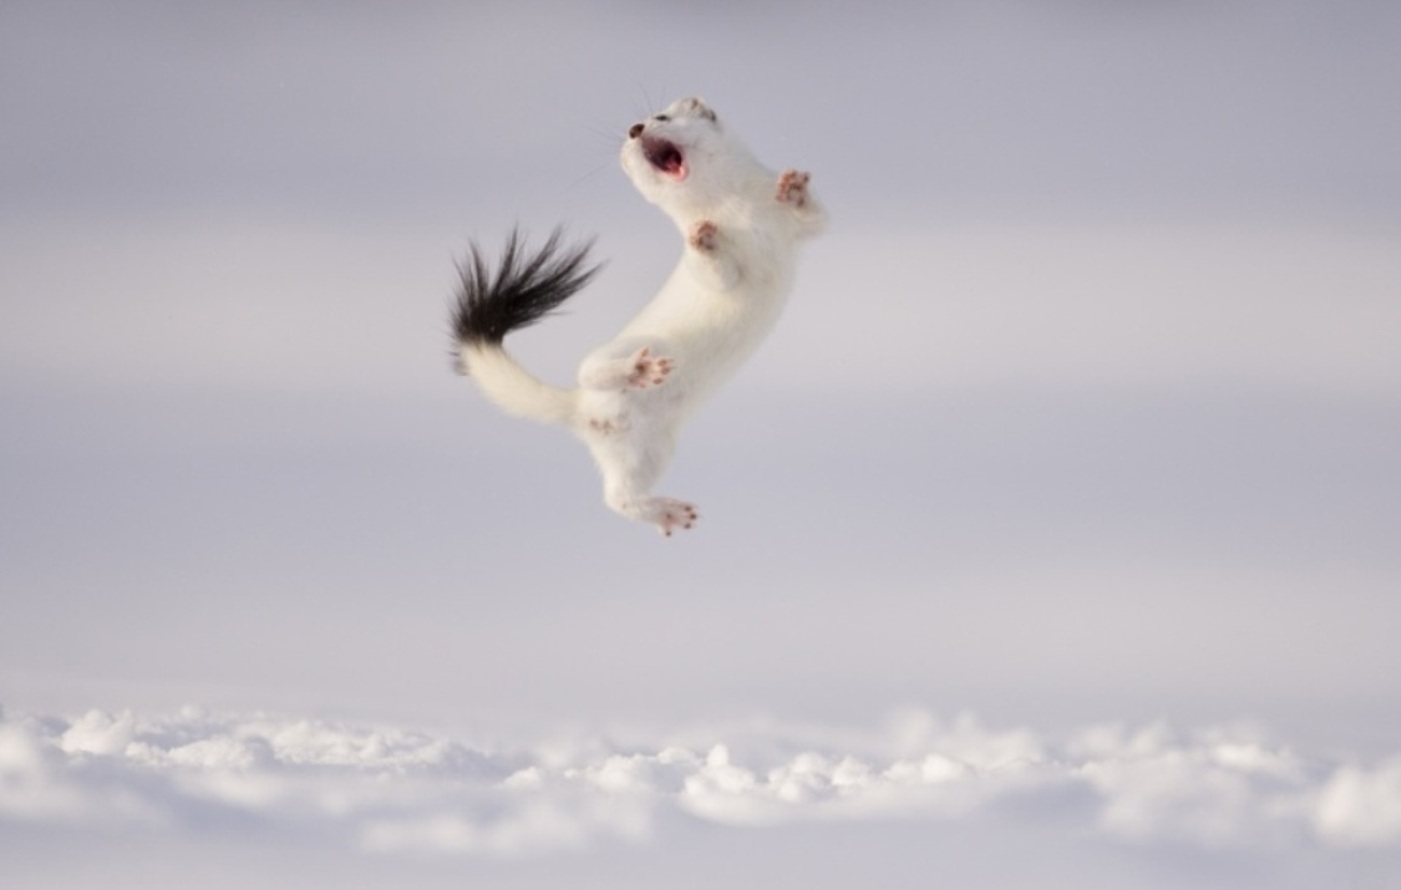 arminho pulando concurso de fotografia prêmio de fotografia fotografia da vida selvagem